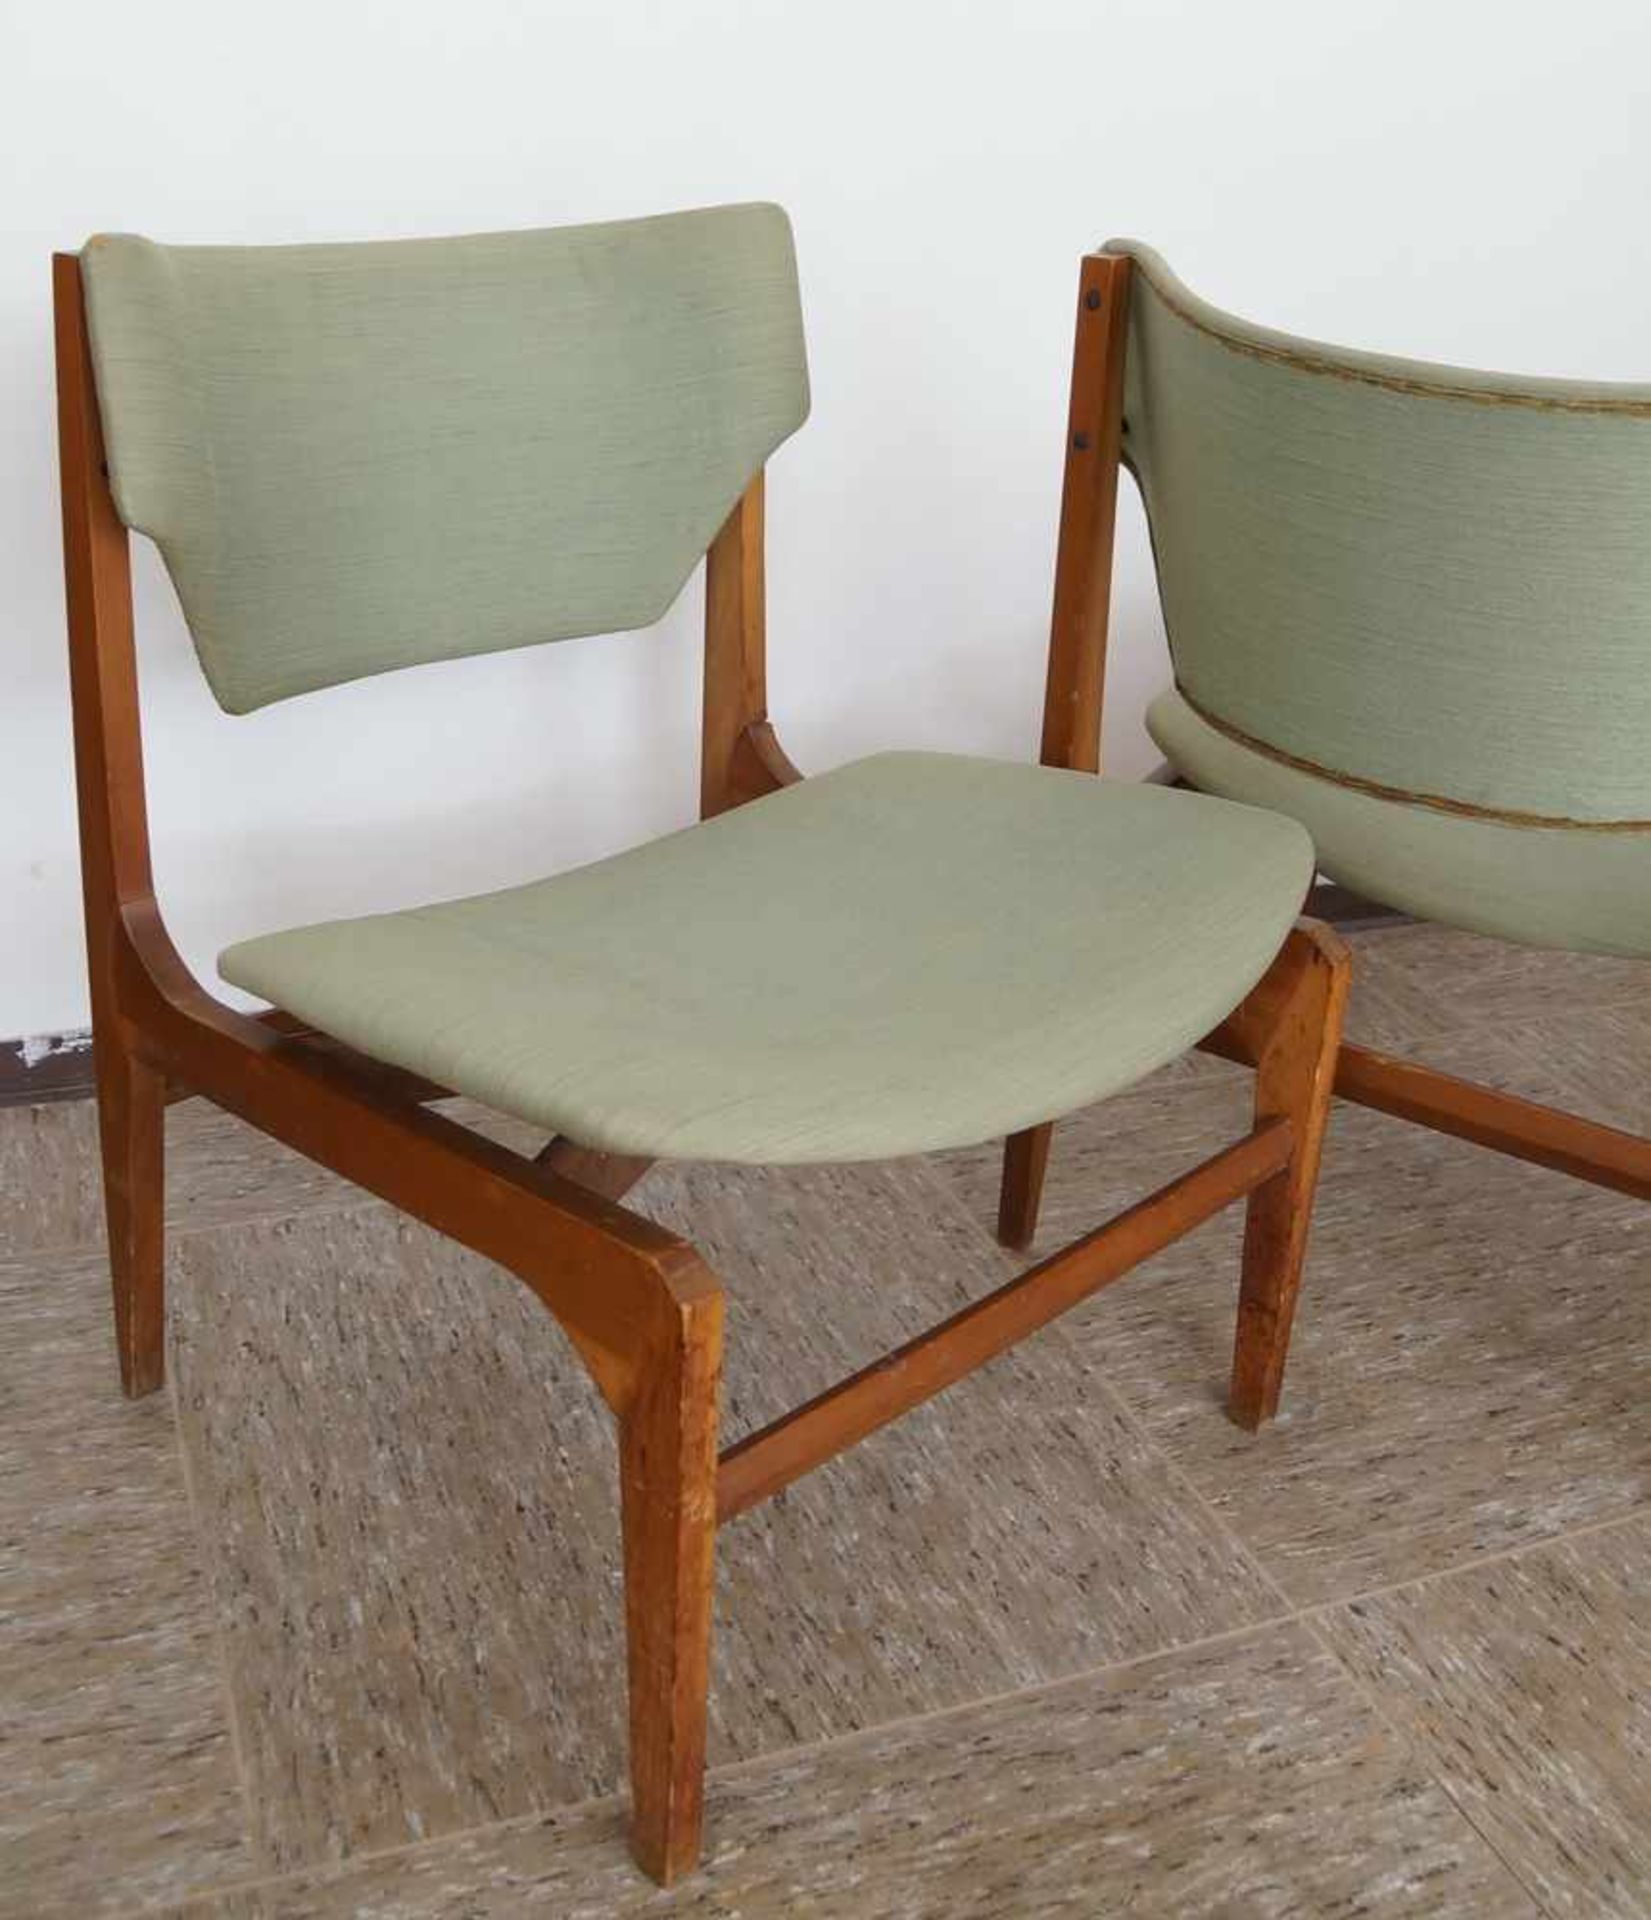 Zwei Stühle und ein Hocker, grüner Bezug, Gio Ponti zugesch. Italien, besch.,74x54x54xSH40 cm, - Bild 5 aus 6